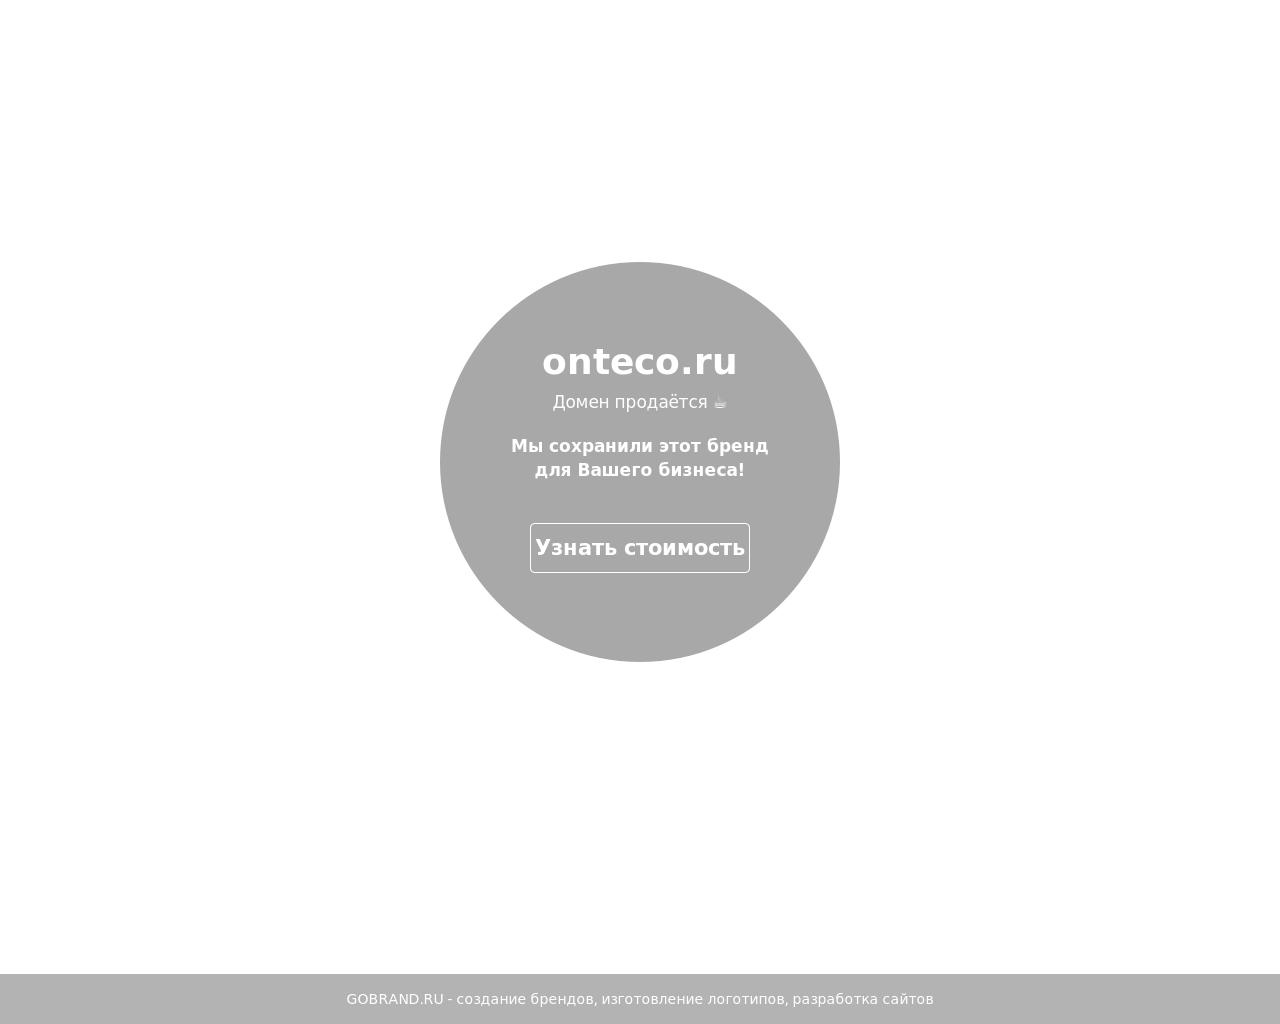 Изображение сайта onteco.ru в разрешении 1280x1024